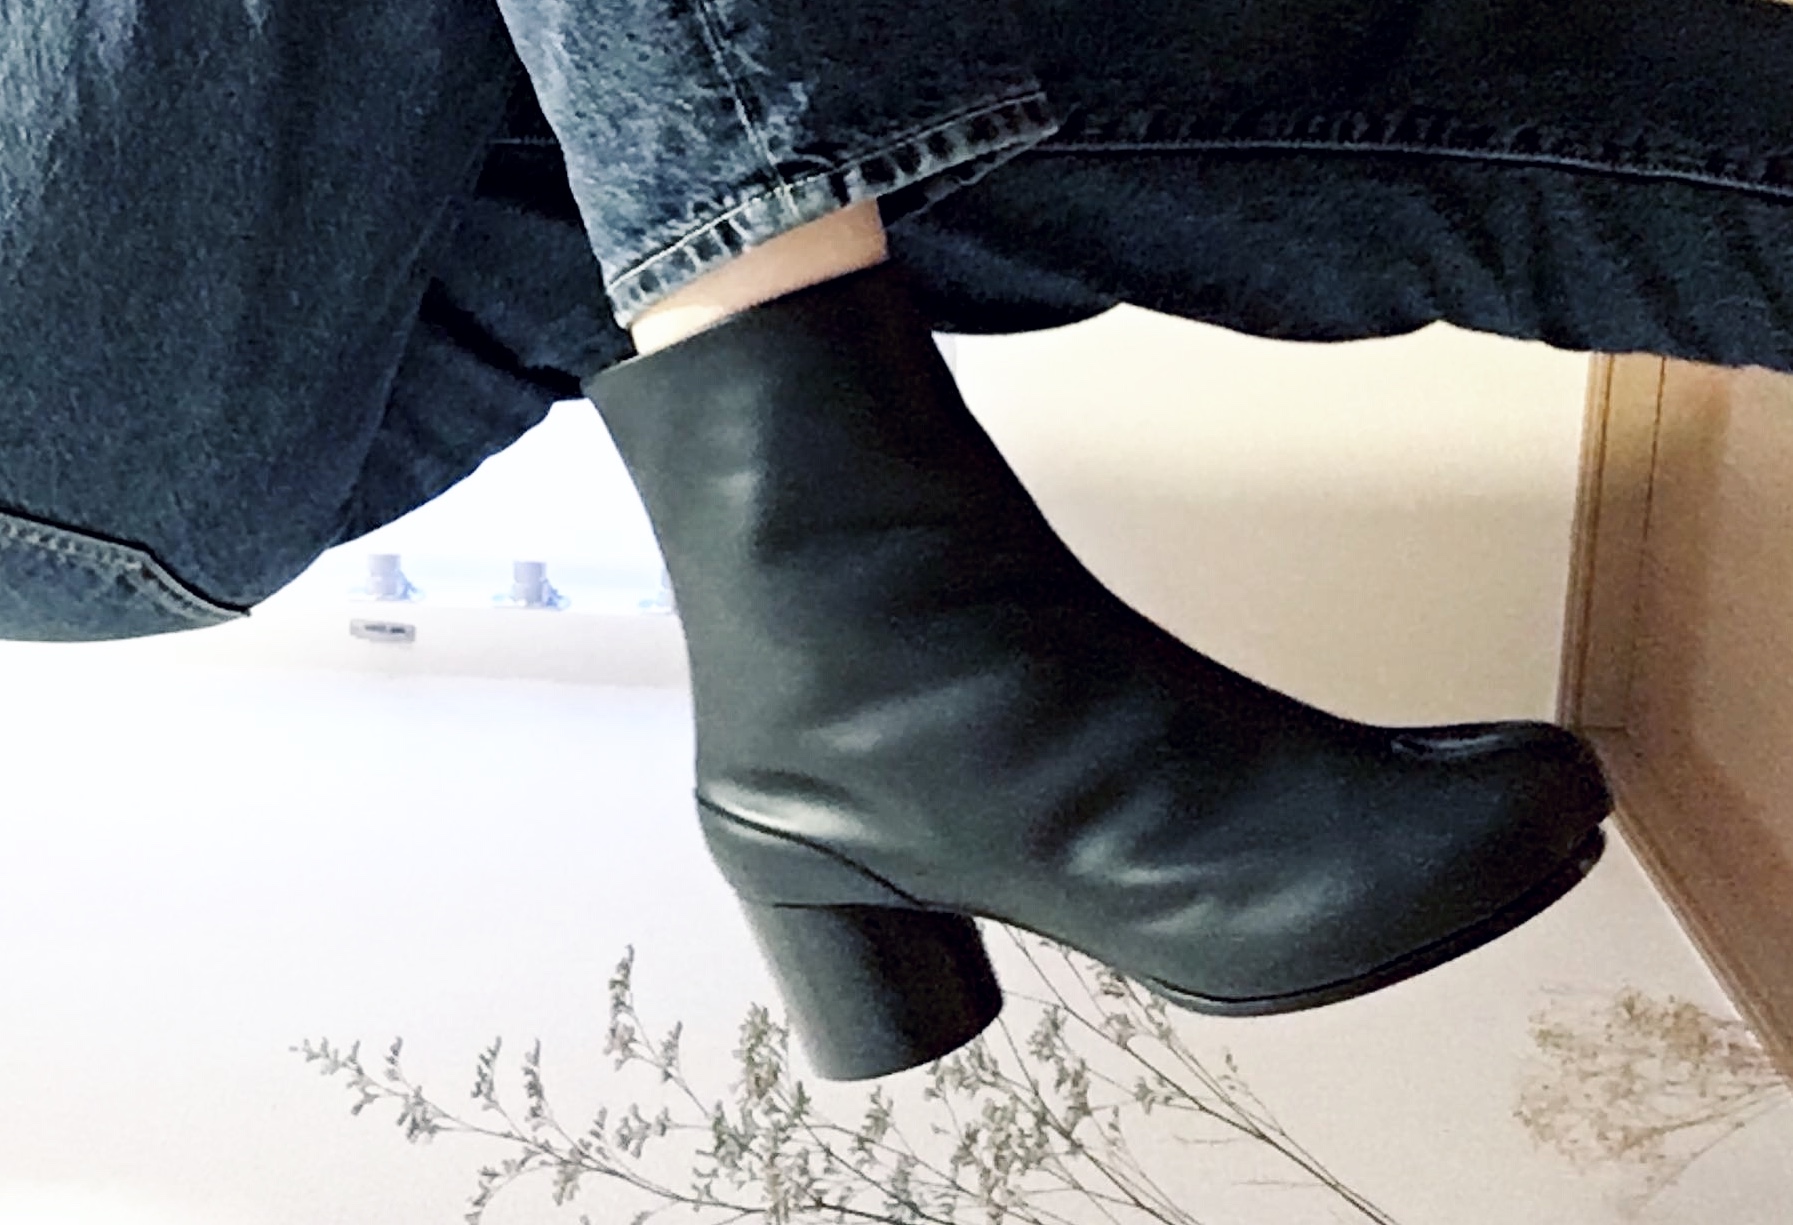 マルジェラ足袋ブーツ×ユニクロジーンズのシンプルコーデ | Fashion 